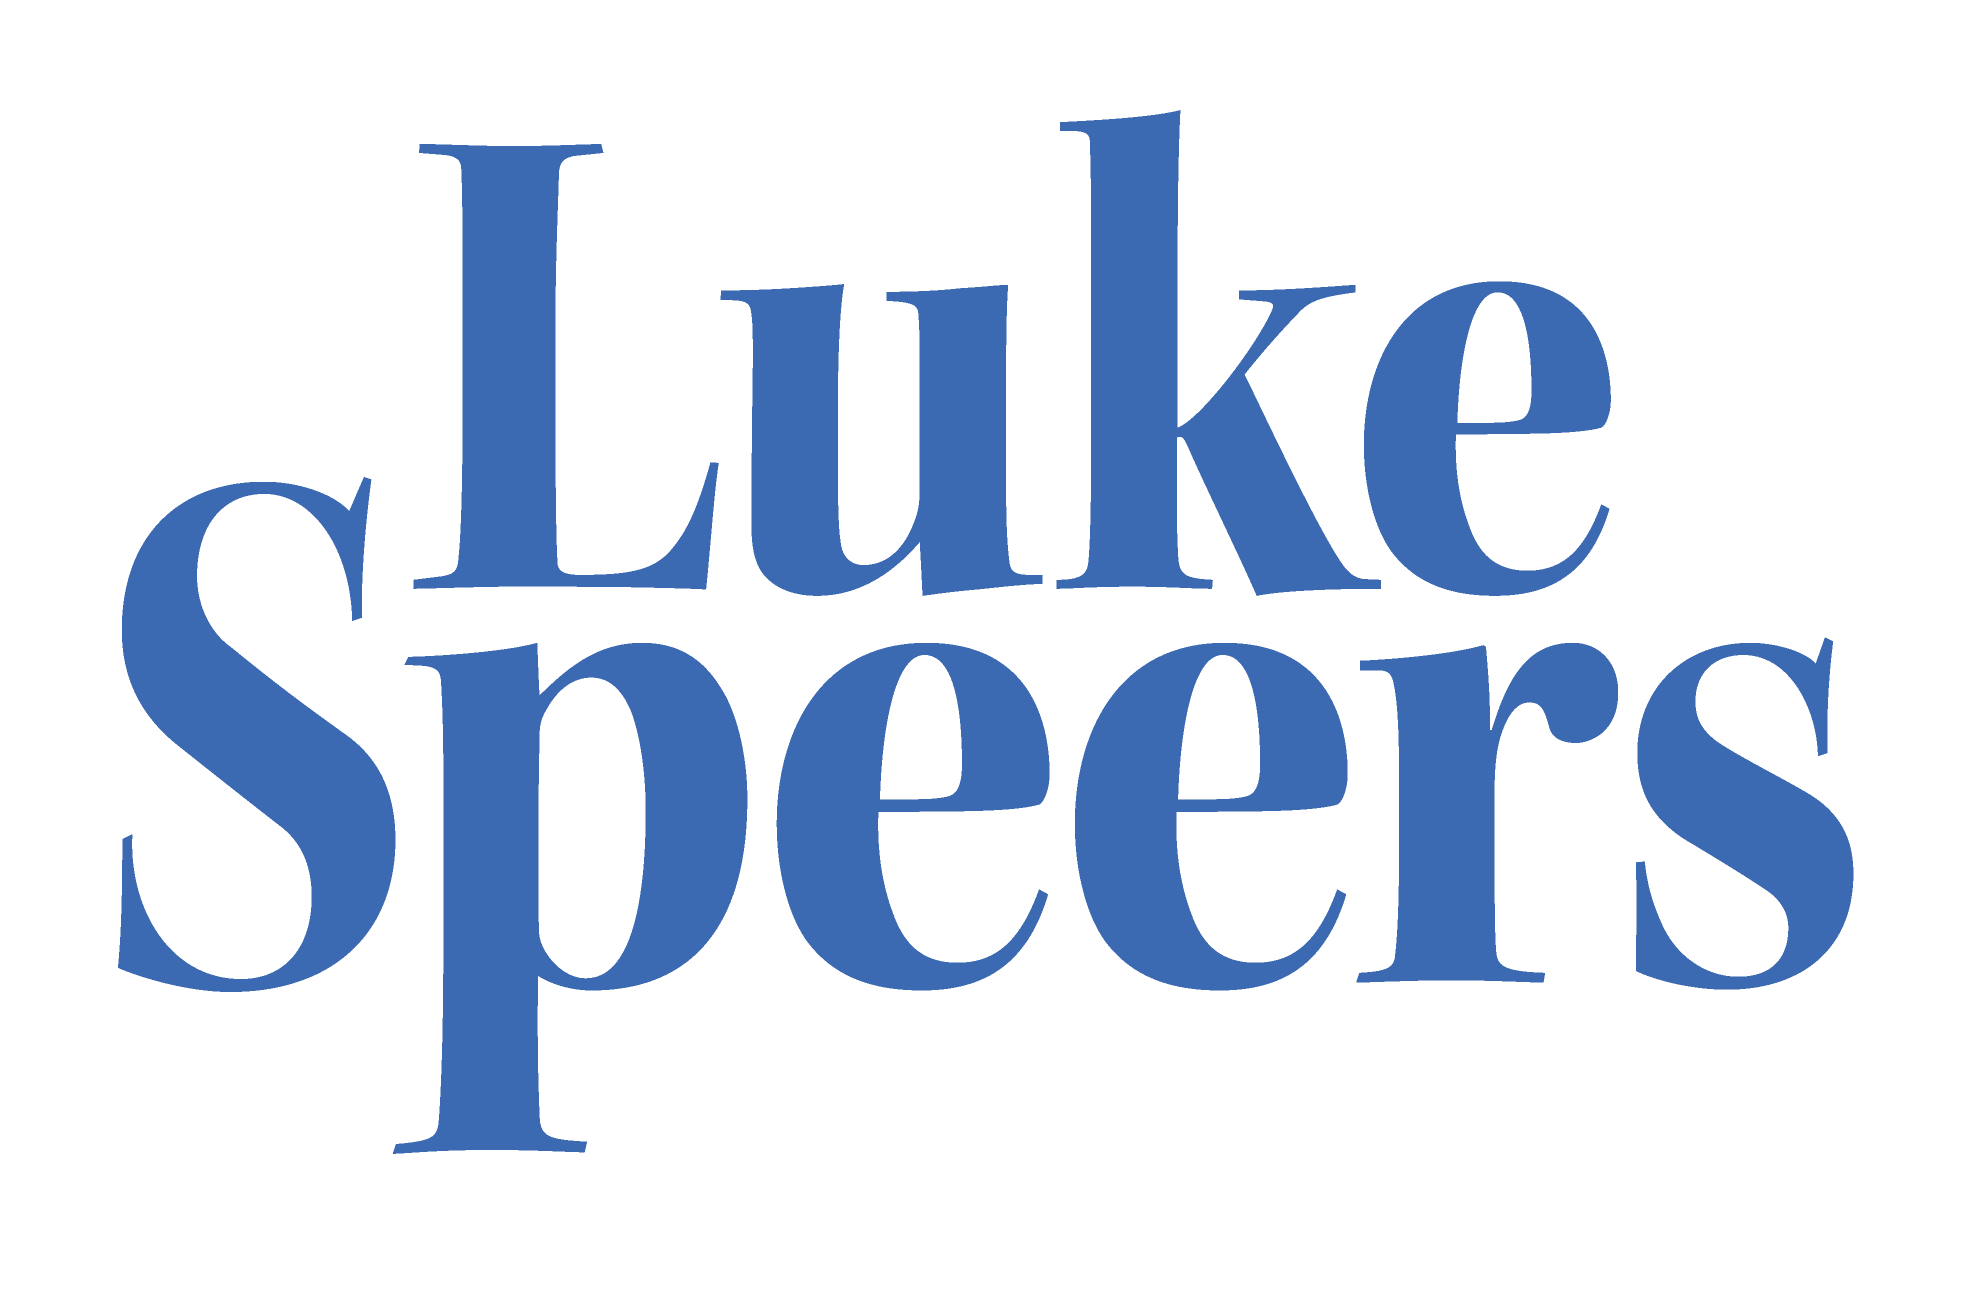 Luke Speers